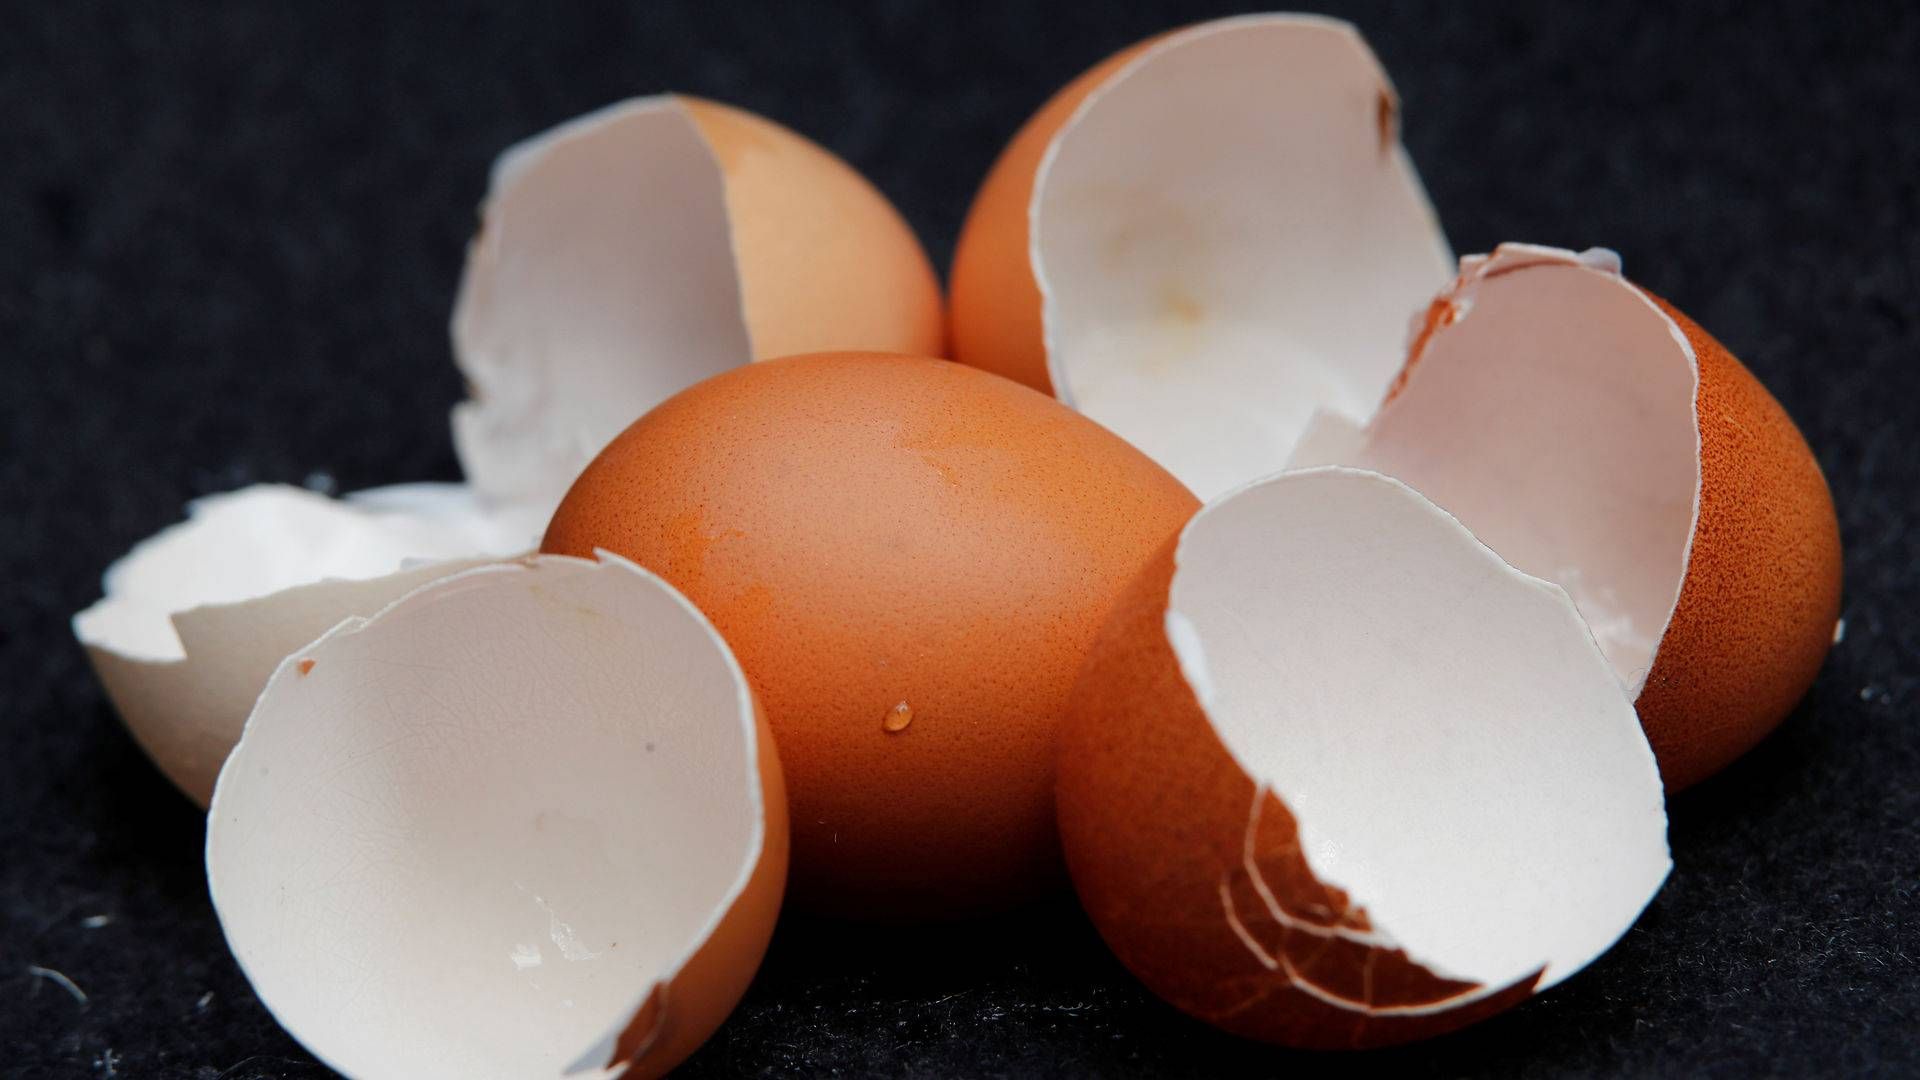 Salget af æg har været stigende i coronatiden, hvilket smitter positivt af på æggebakkevirksomheden Brdr. Hartmann. | Foto: Wolfgang Rattay/Reuters/Ritzau Scanpix